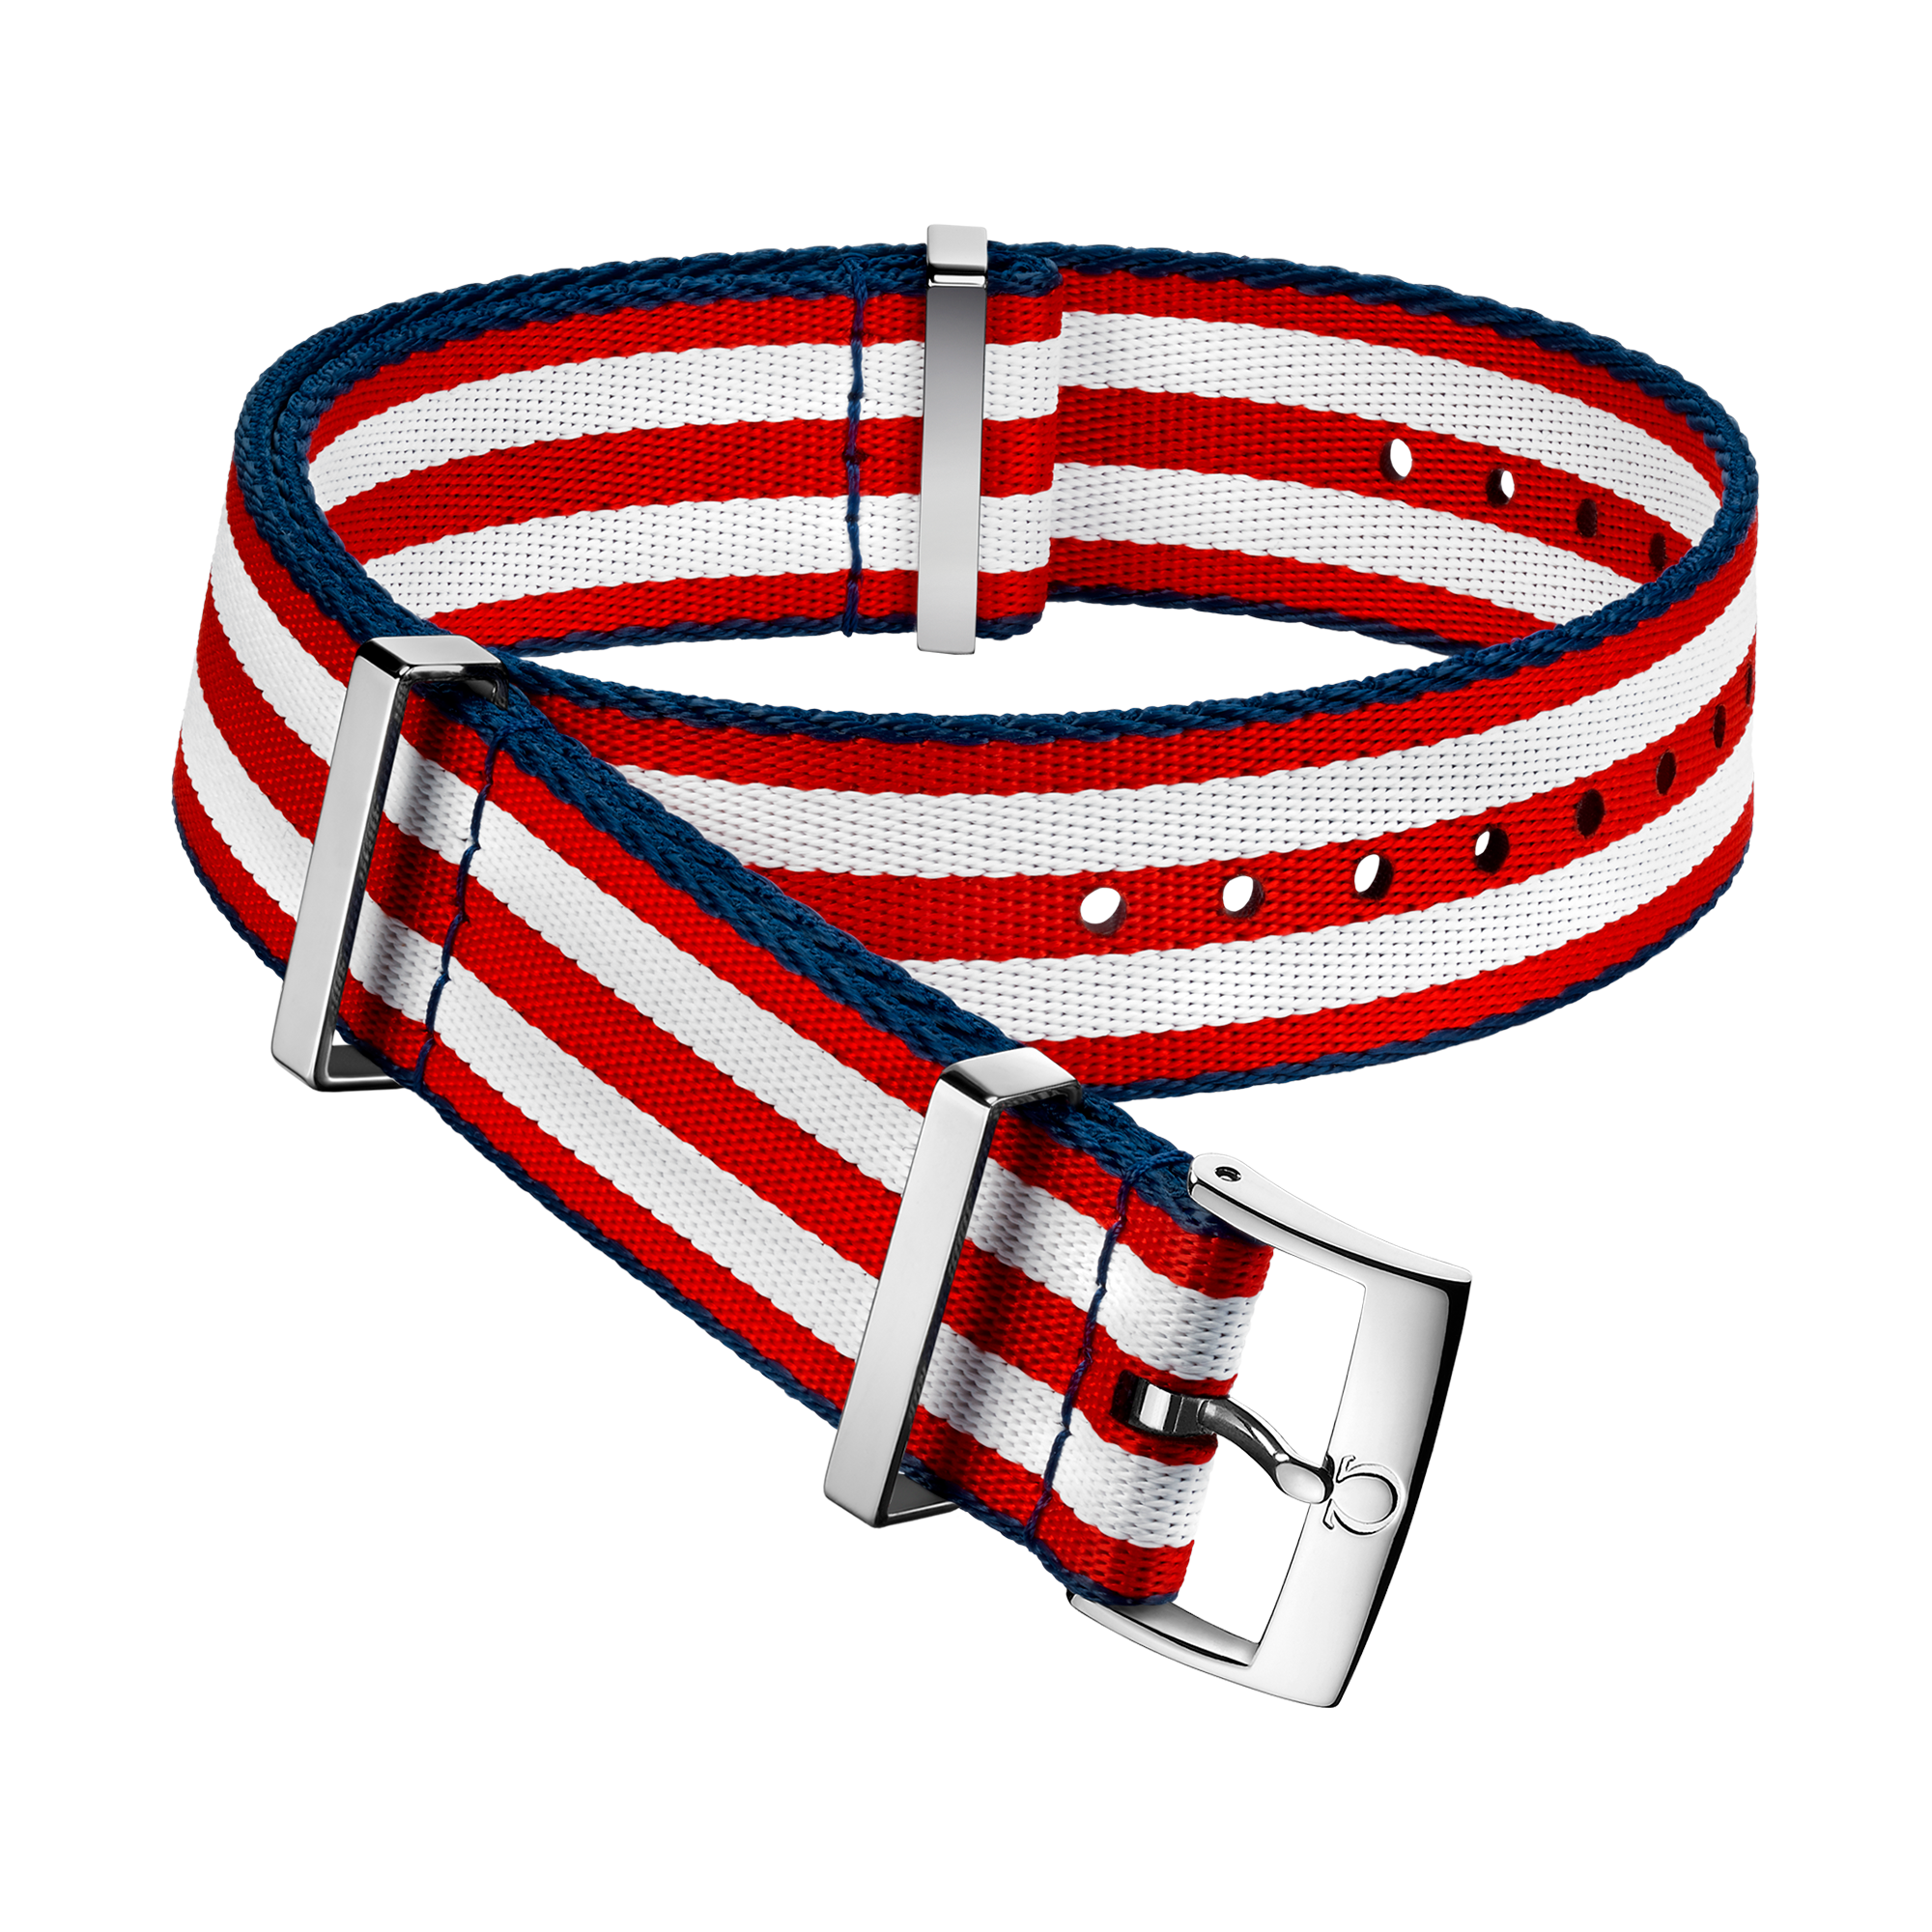 Cinturino NATO - Cinturino in poliammide rosso e bianco con 5 strisce e bordi blu - 031CWZ010616